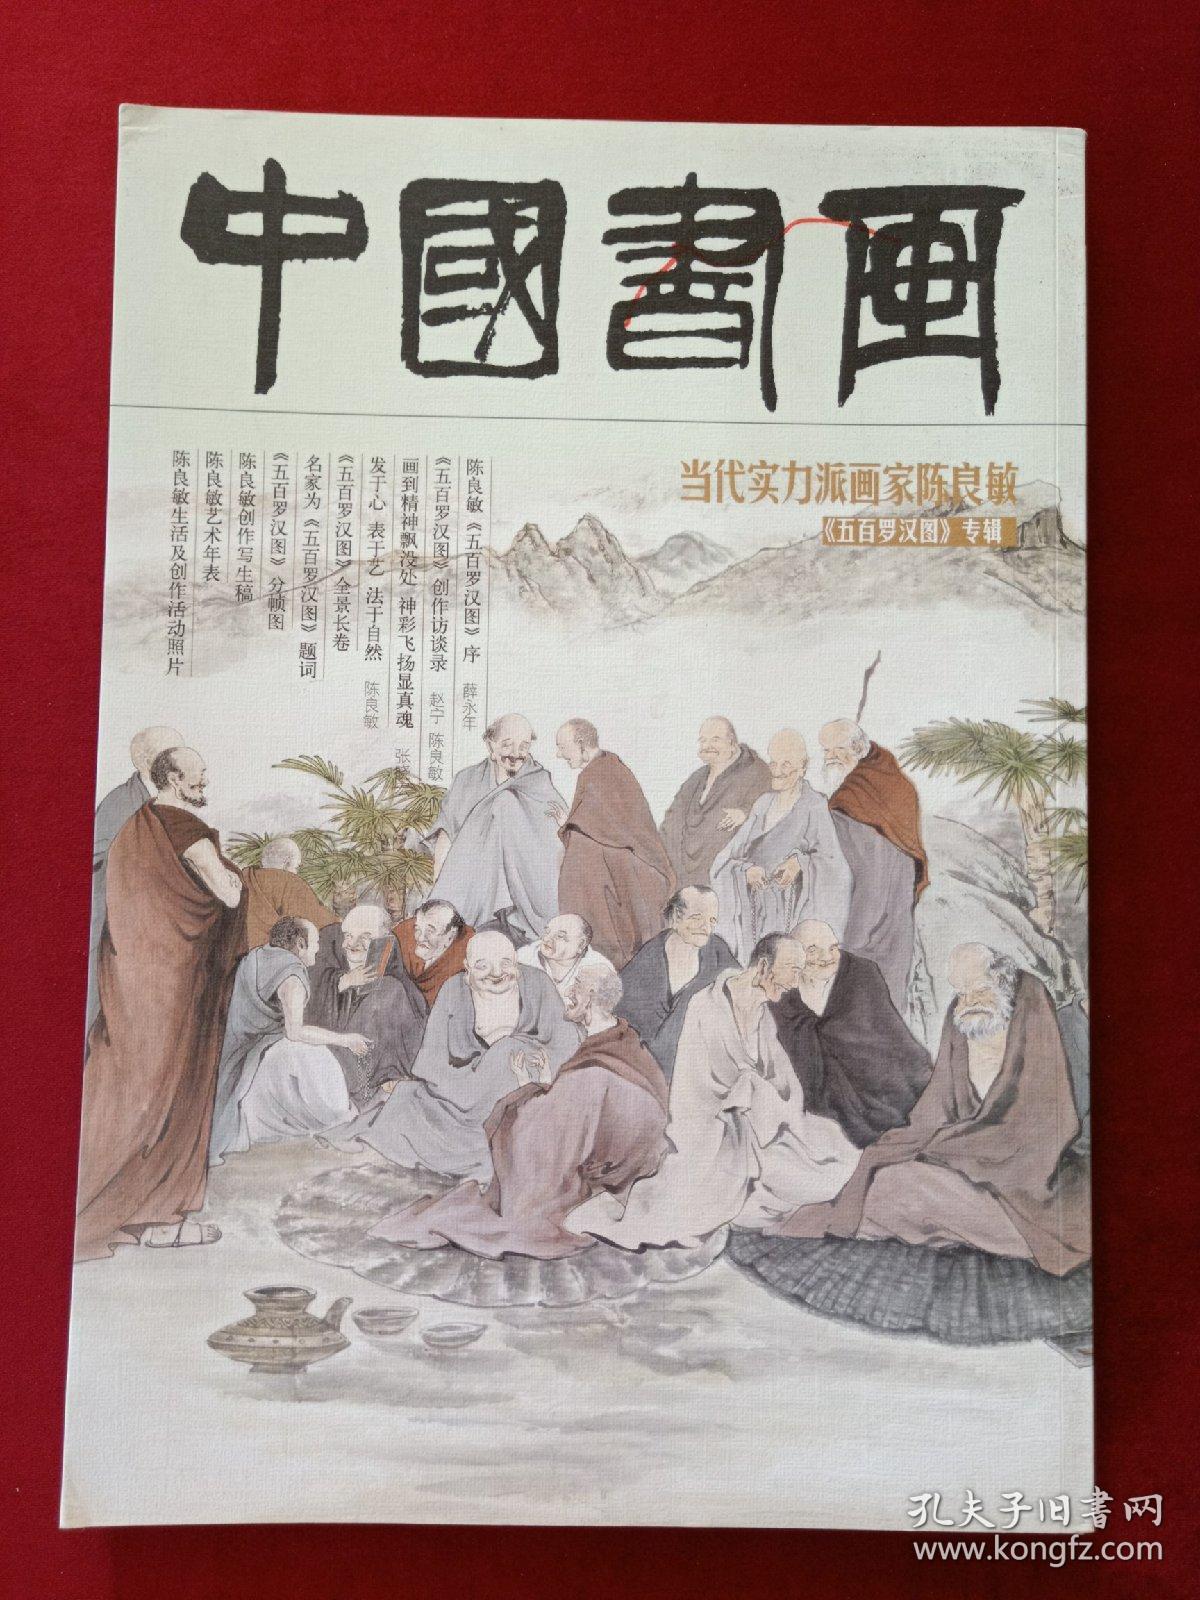 中国书画——当代实力派画家陈良敏《五百罗汉图》专辑